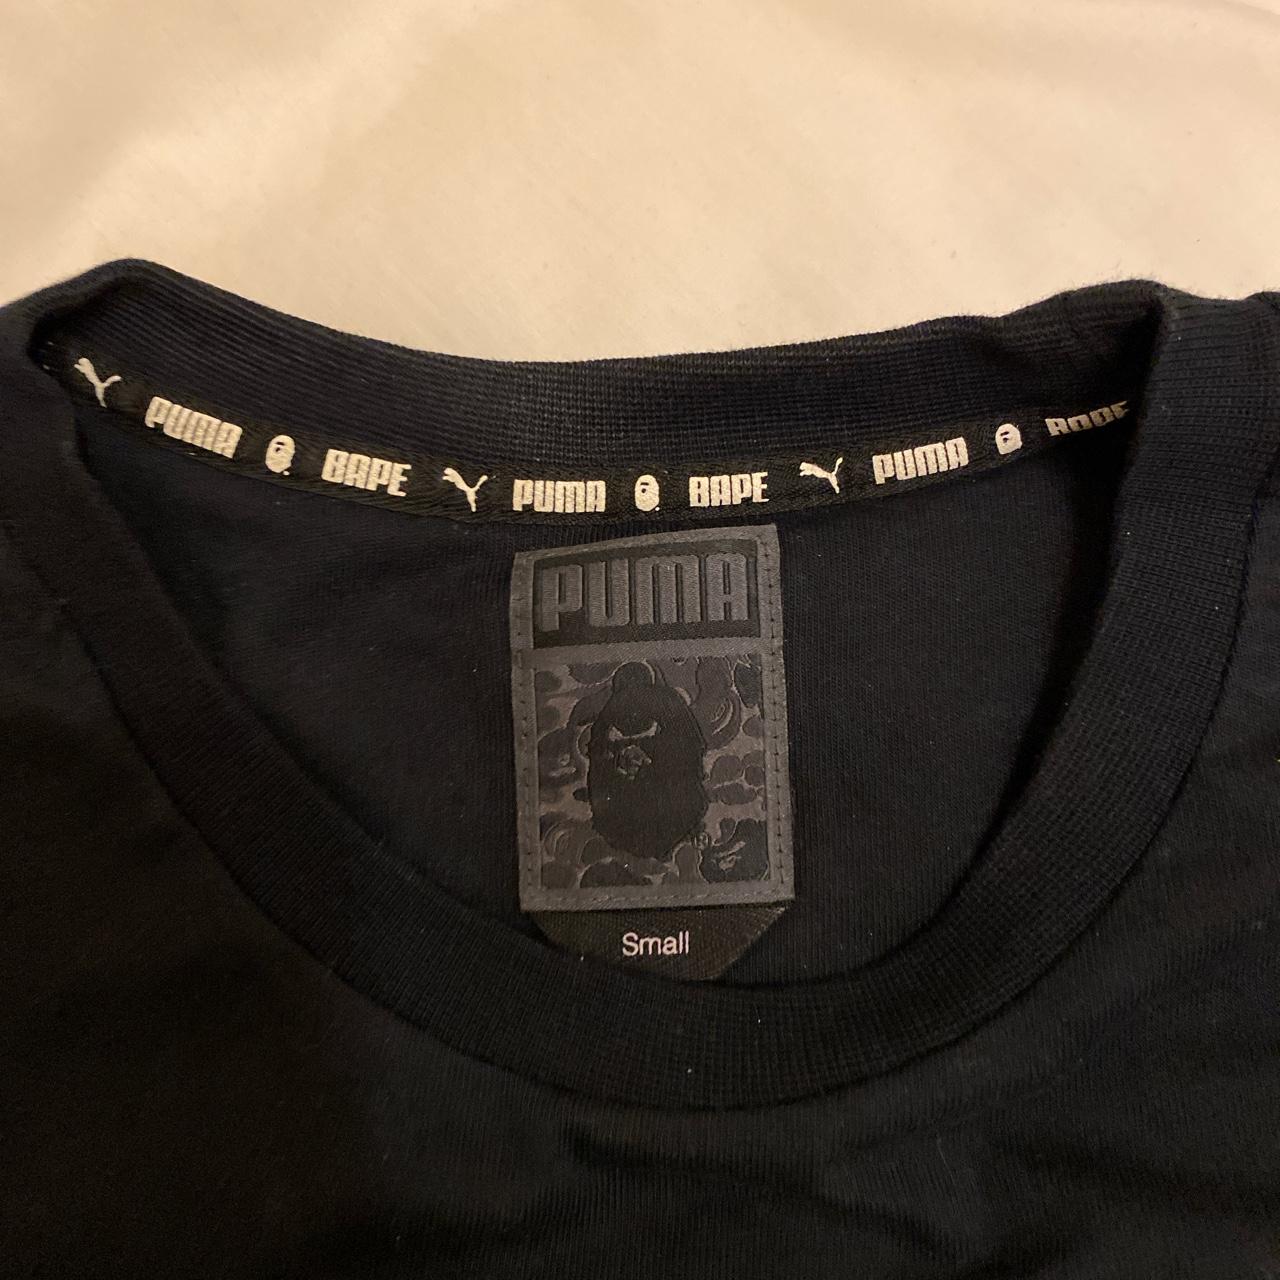 - Logo Puma ABC Bape T Depop Camo Bathing... A Shirt x Black